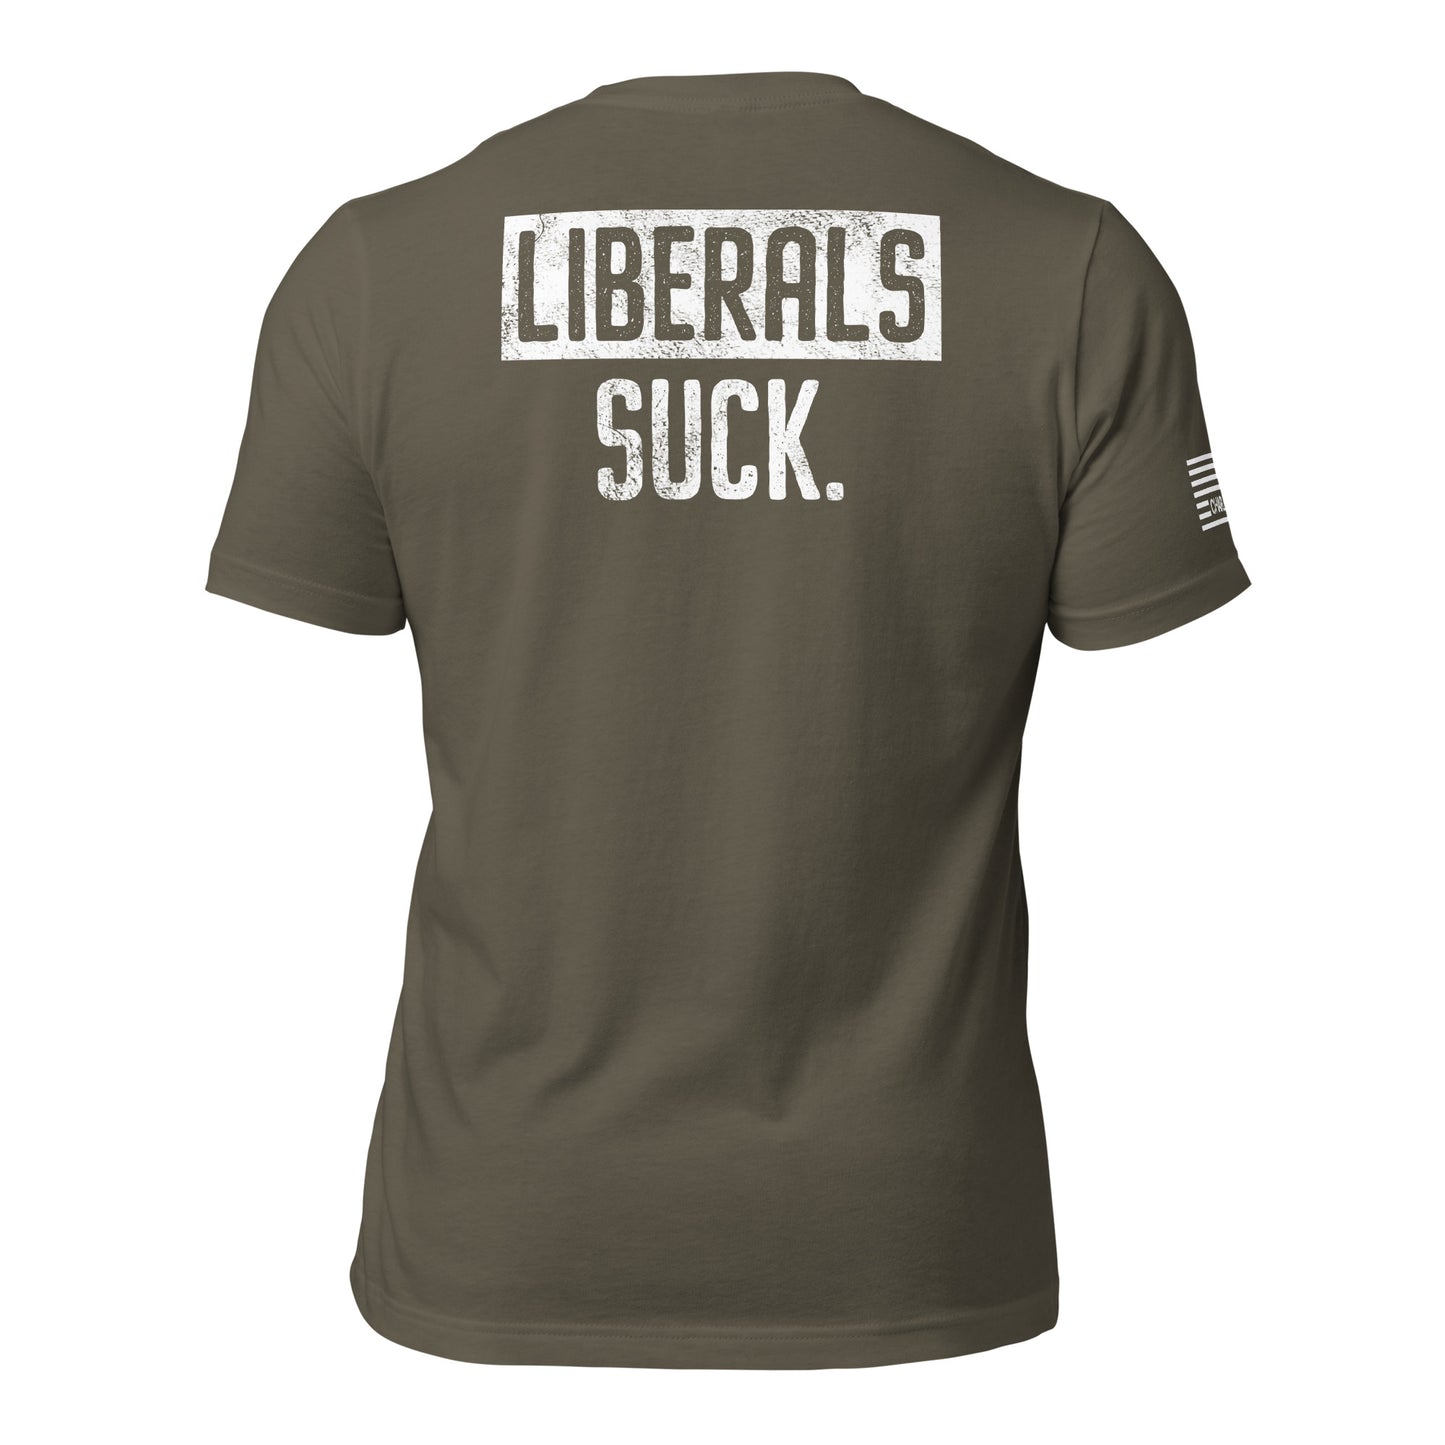 Liberals Suck Unisex T-shirt